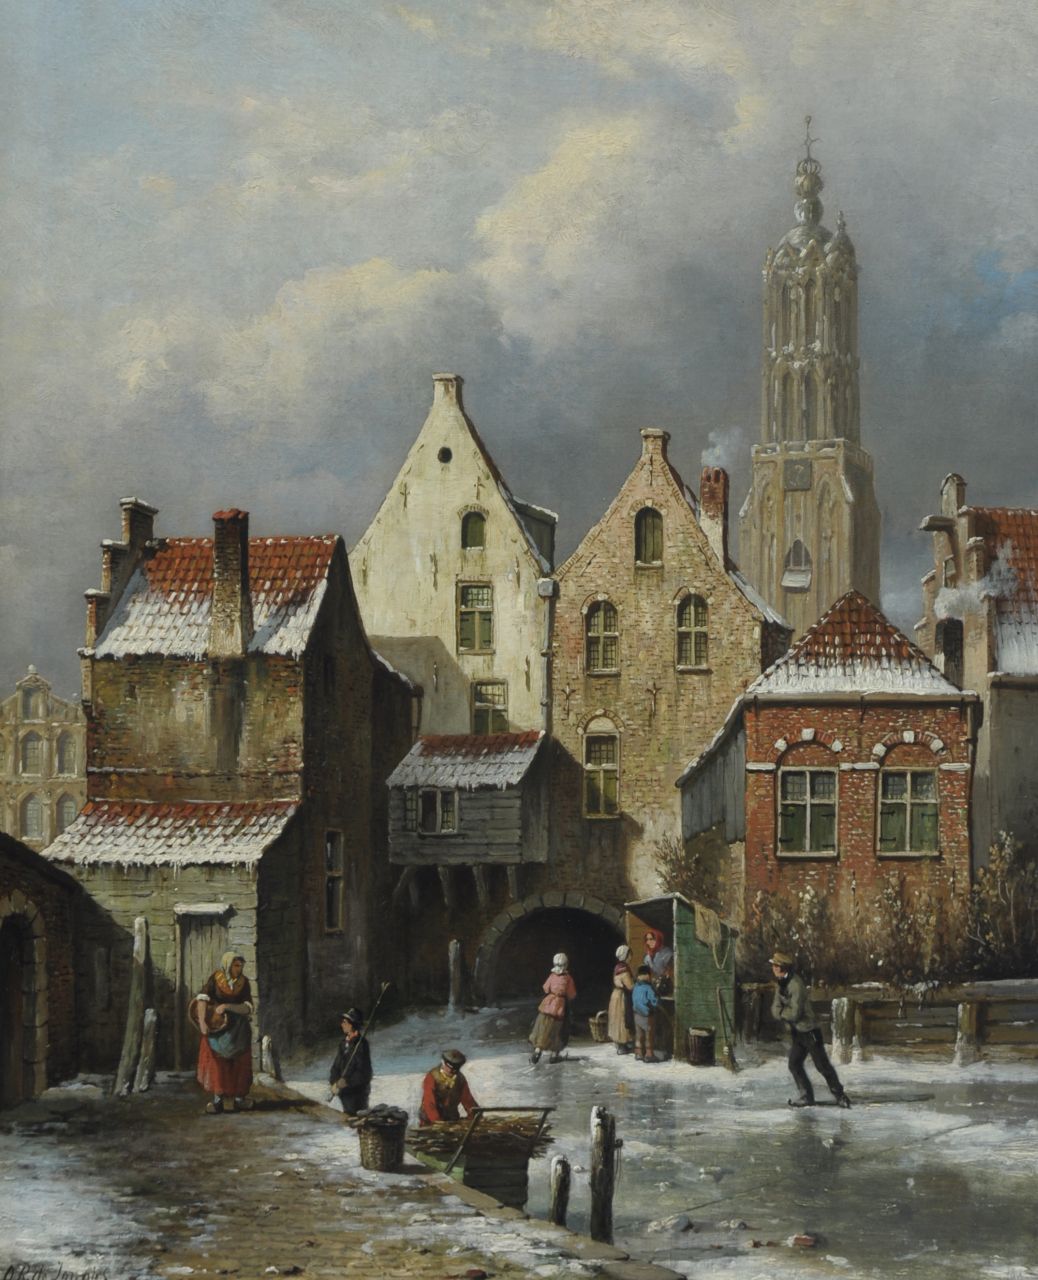 Jongh O.R. de | Oene Romkes de Jongh, Winter in Amersfoort, oil on canvas 54.1 x 44.0 cm, signed l.l.